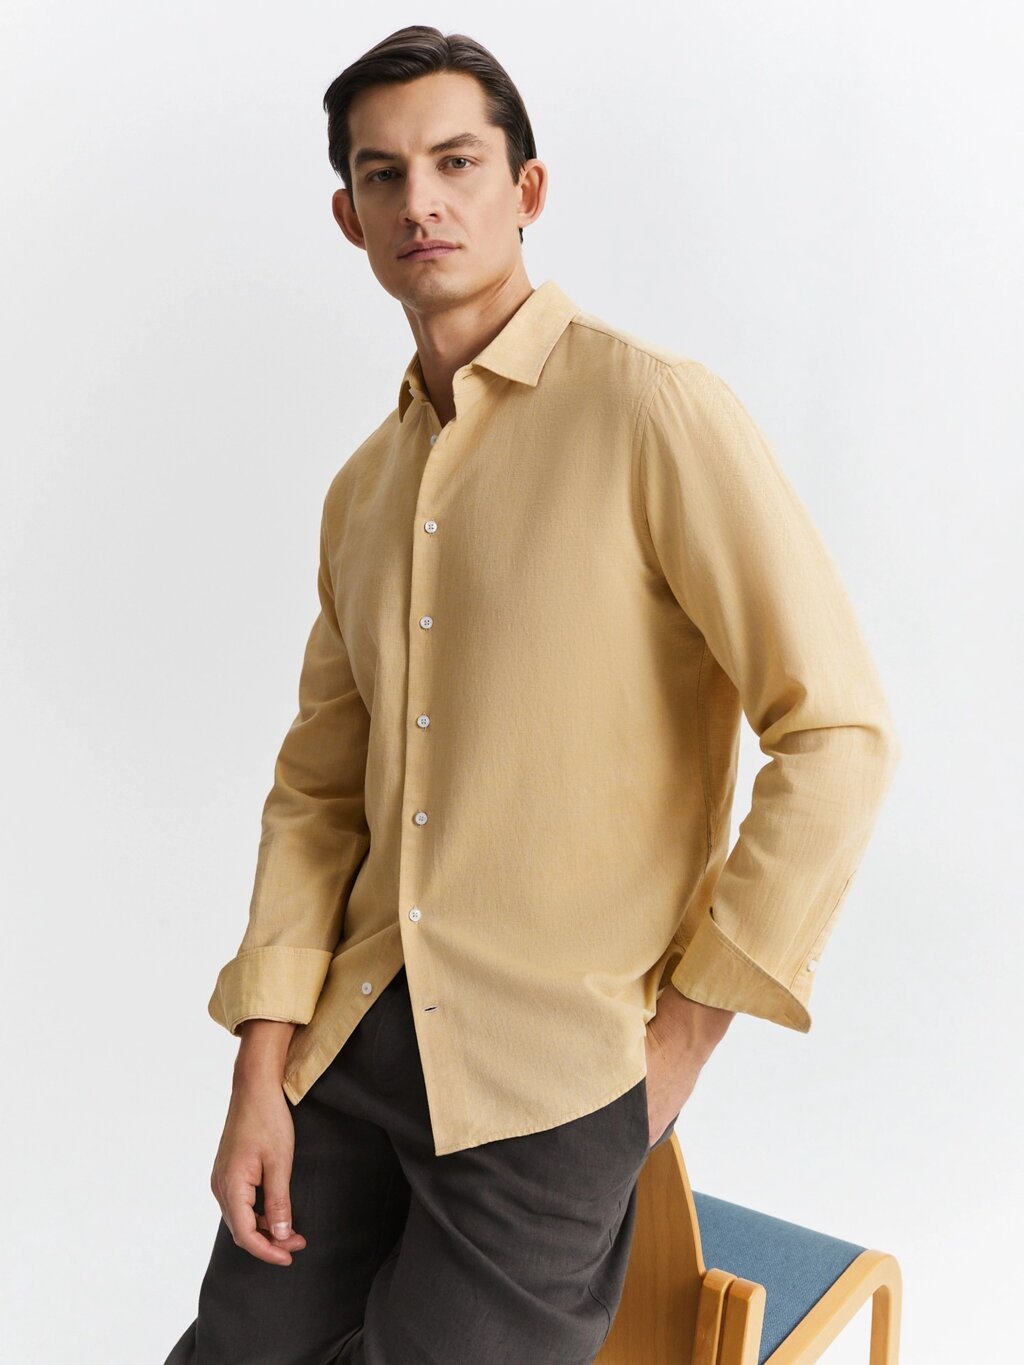 Рубашка из хлопка и льна (54) от компании Admi - фото 1